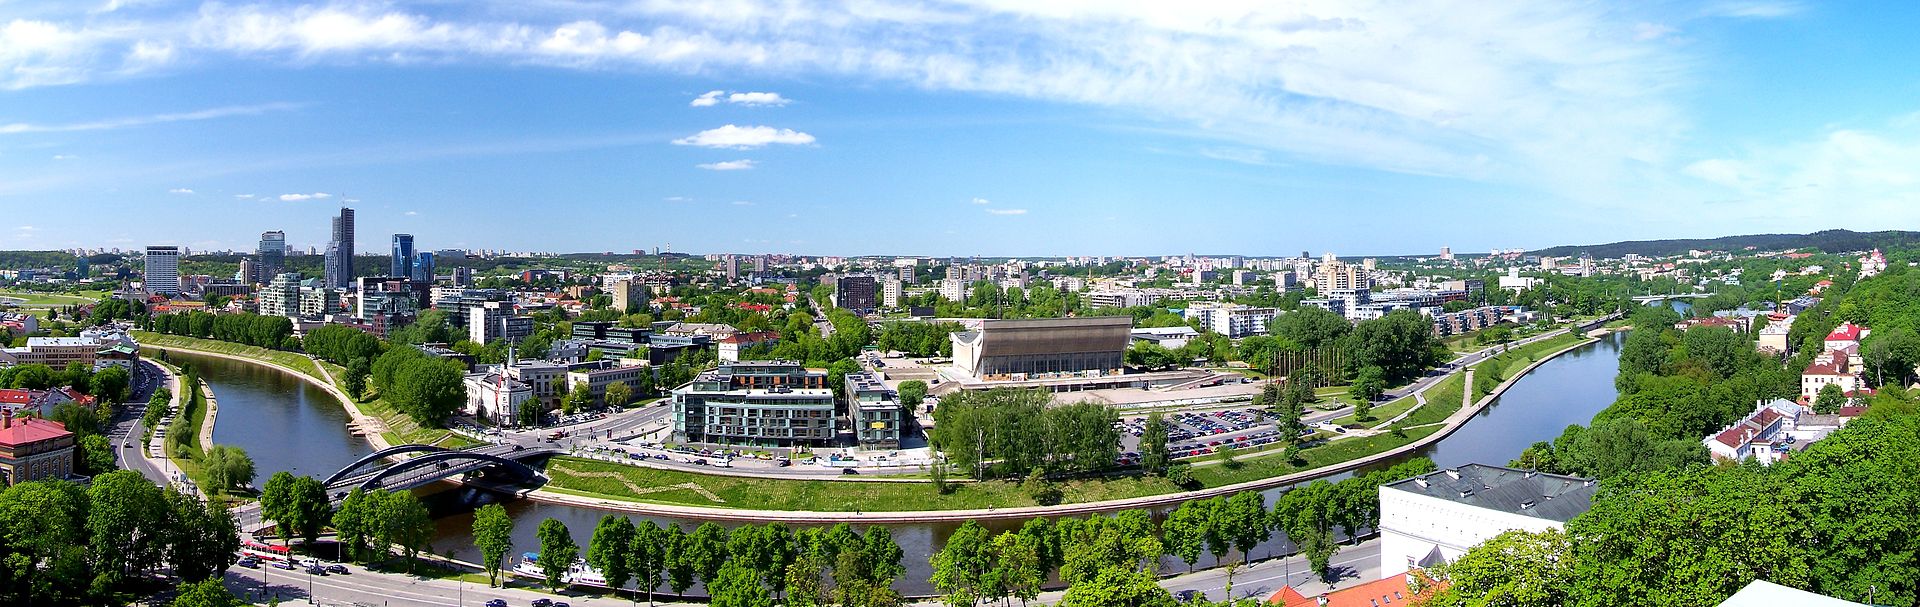 ویلنیوس پایتخت کشور لیتوانی